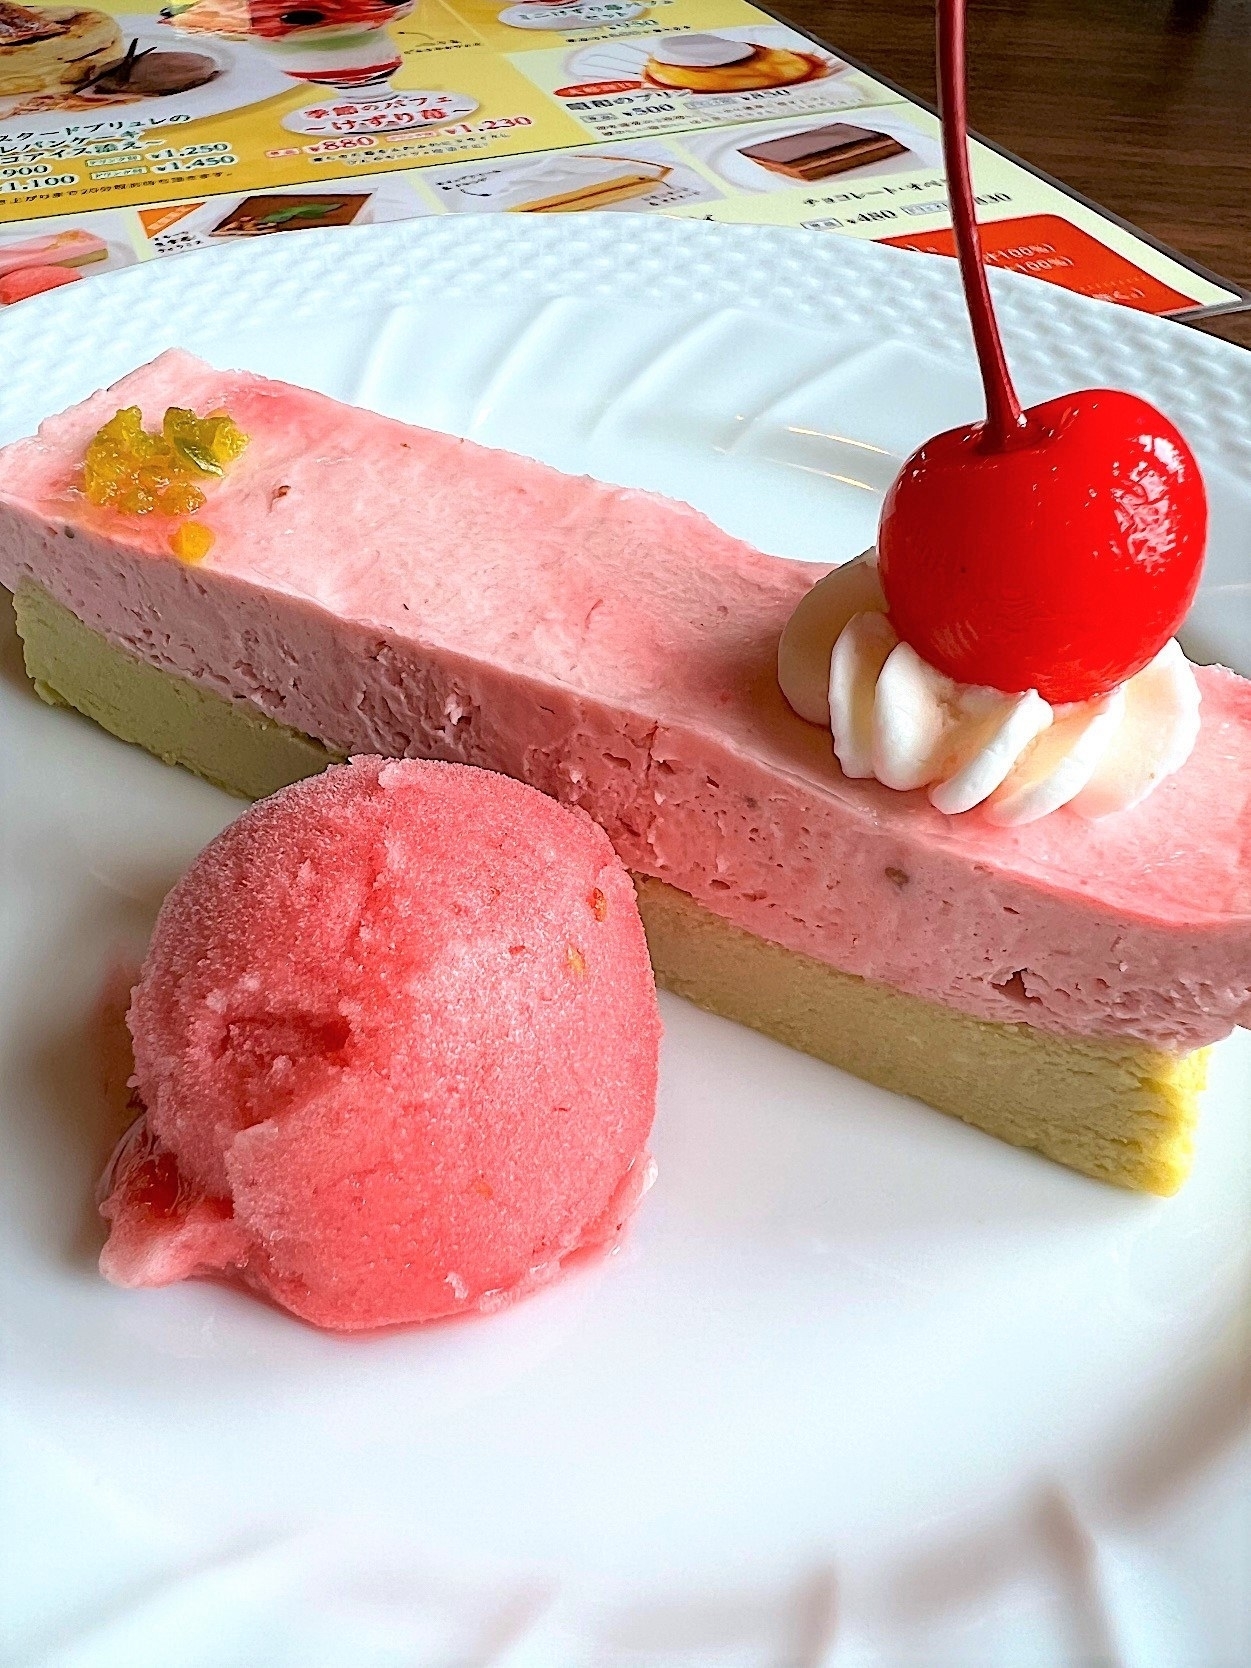 星乃珈琲店のおすすめスイーツメニュー「苺とピスタチオのWチーズケーキ/ラズベリーソルベ添え」